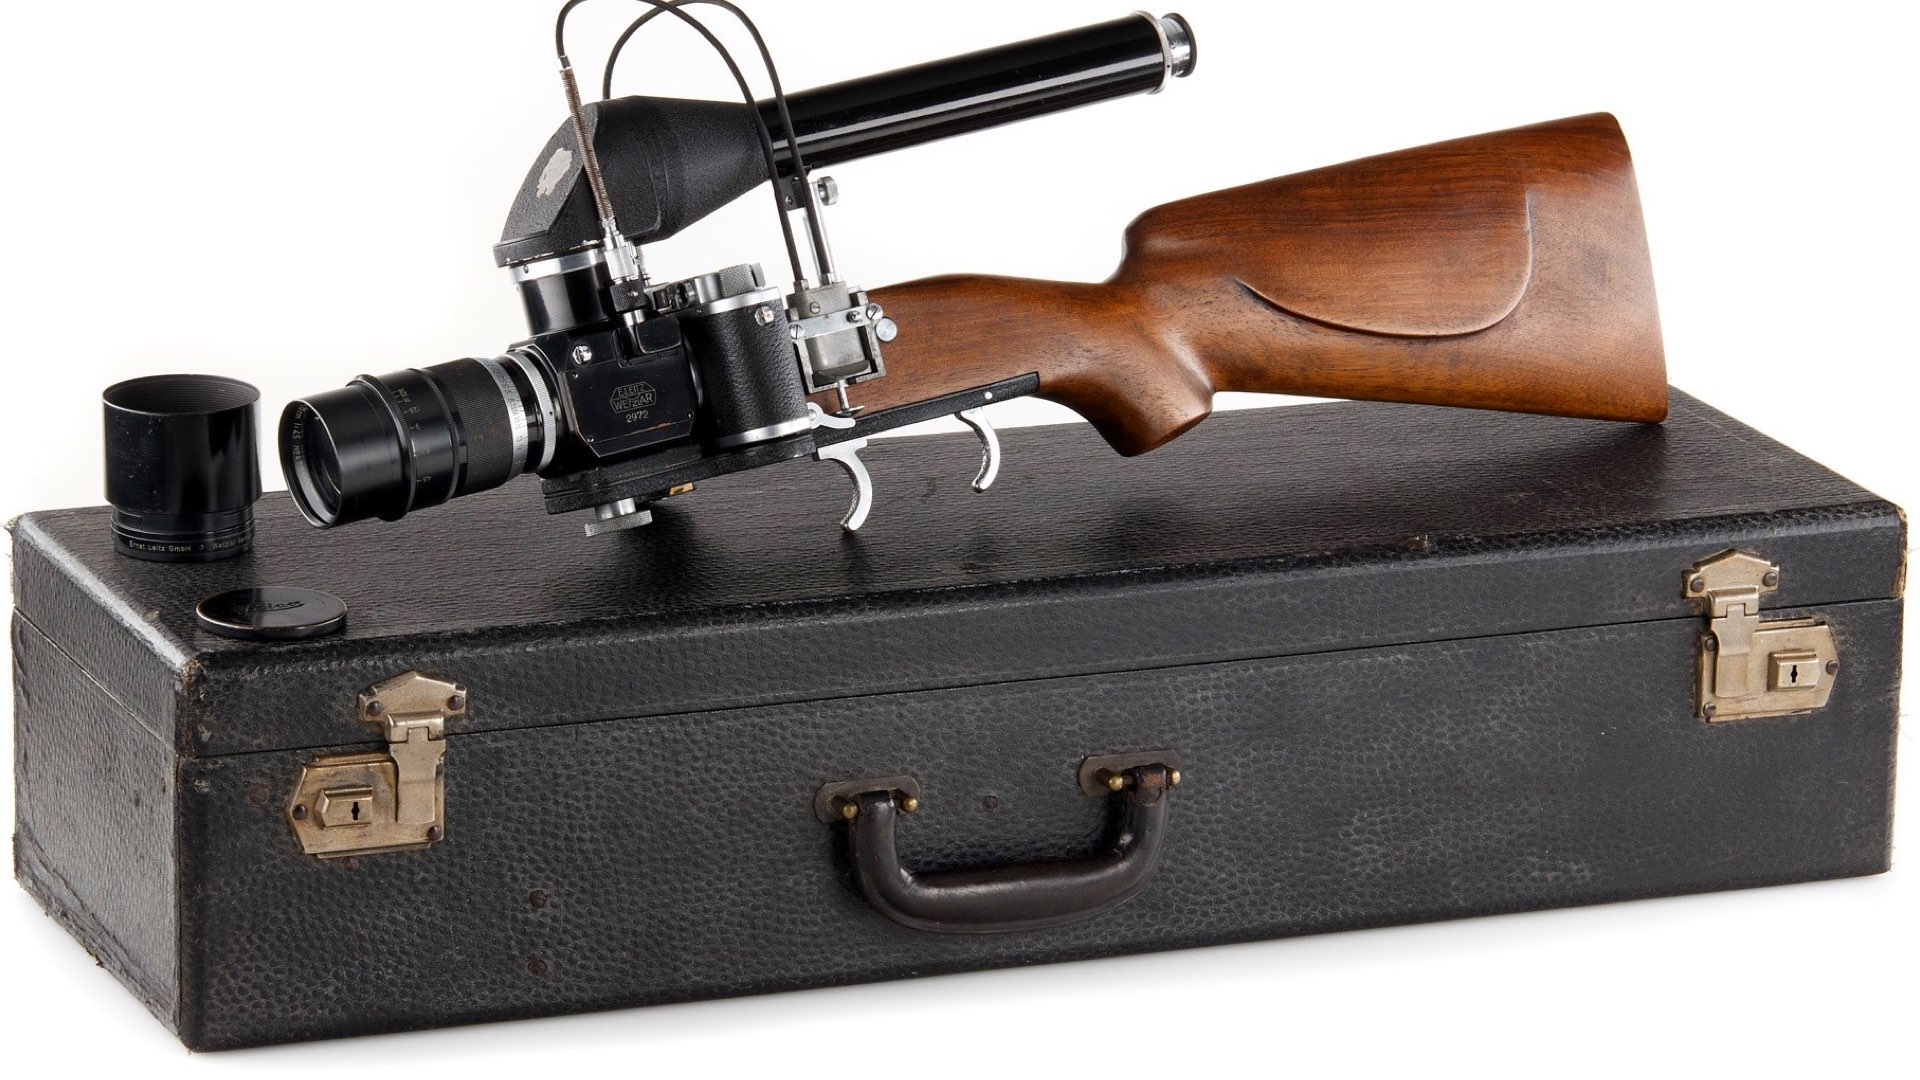 The E. Leitz New York Leica Gun Rifle